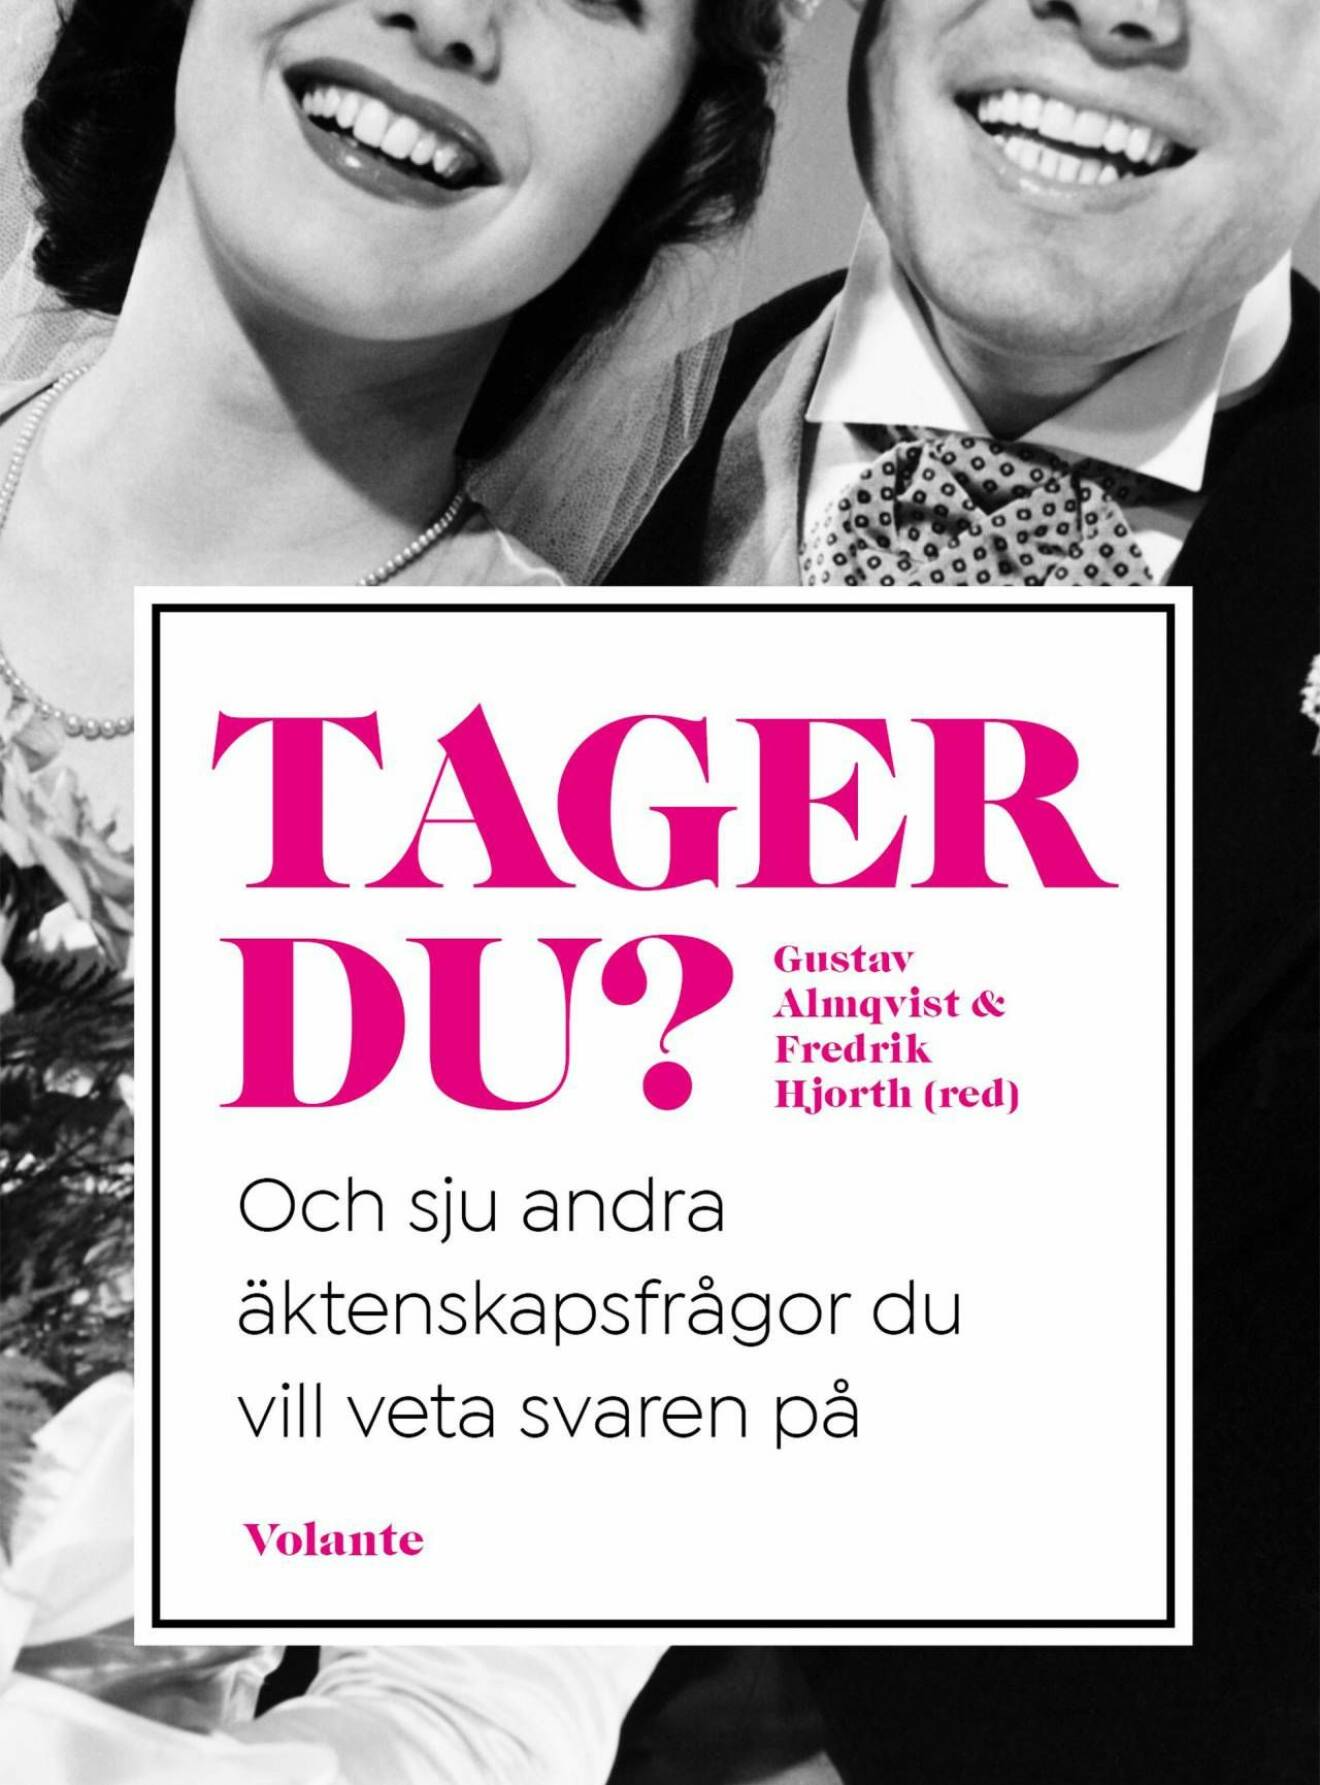 Bokomslag på Tager du? av Gustav Almqvist och Fredrik Hjorth.